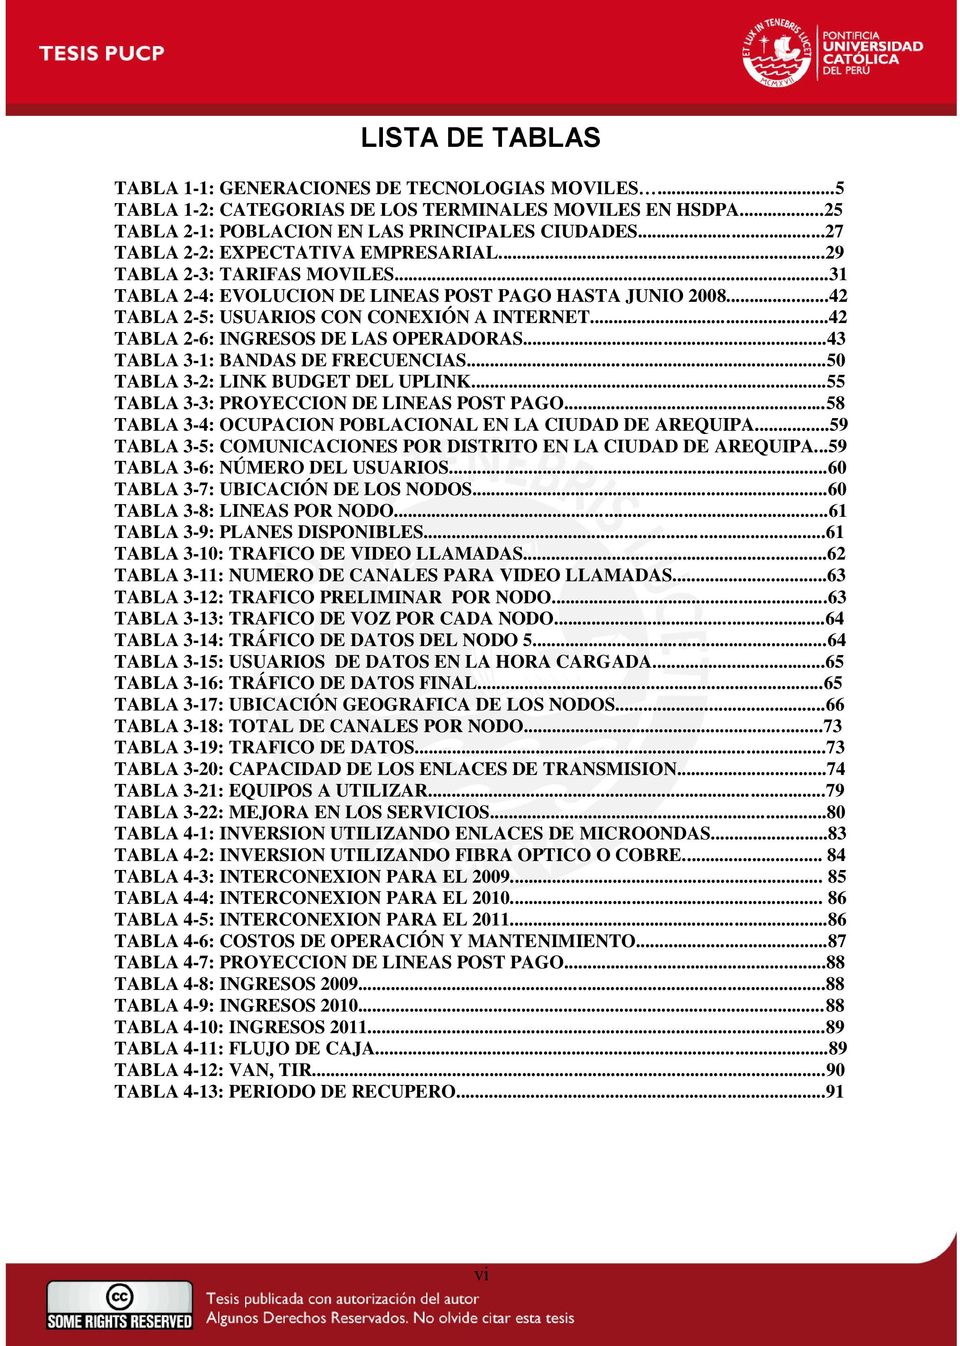 ..42 TABLA 2-6: INGRESOS DE LAS OPERADORAS...43 TABLA 3-1: BANDAS DE FRECUENCIAS...50 TABLA 3-2: LINK BUDGET DEL UPLINK...55 TABLA 3-3: PROYECCION DE LINEAS POST PAGO.